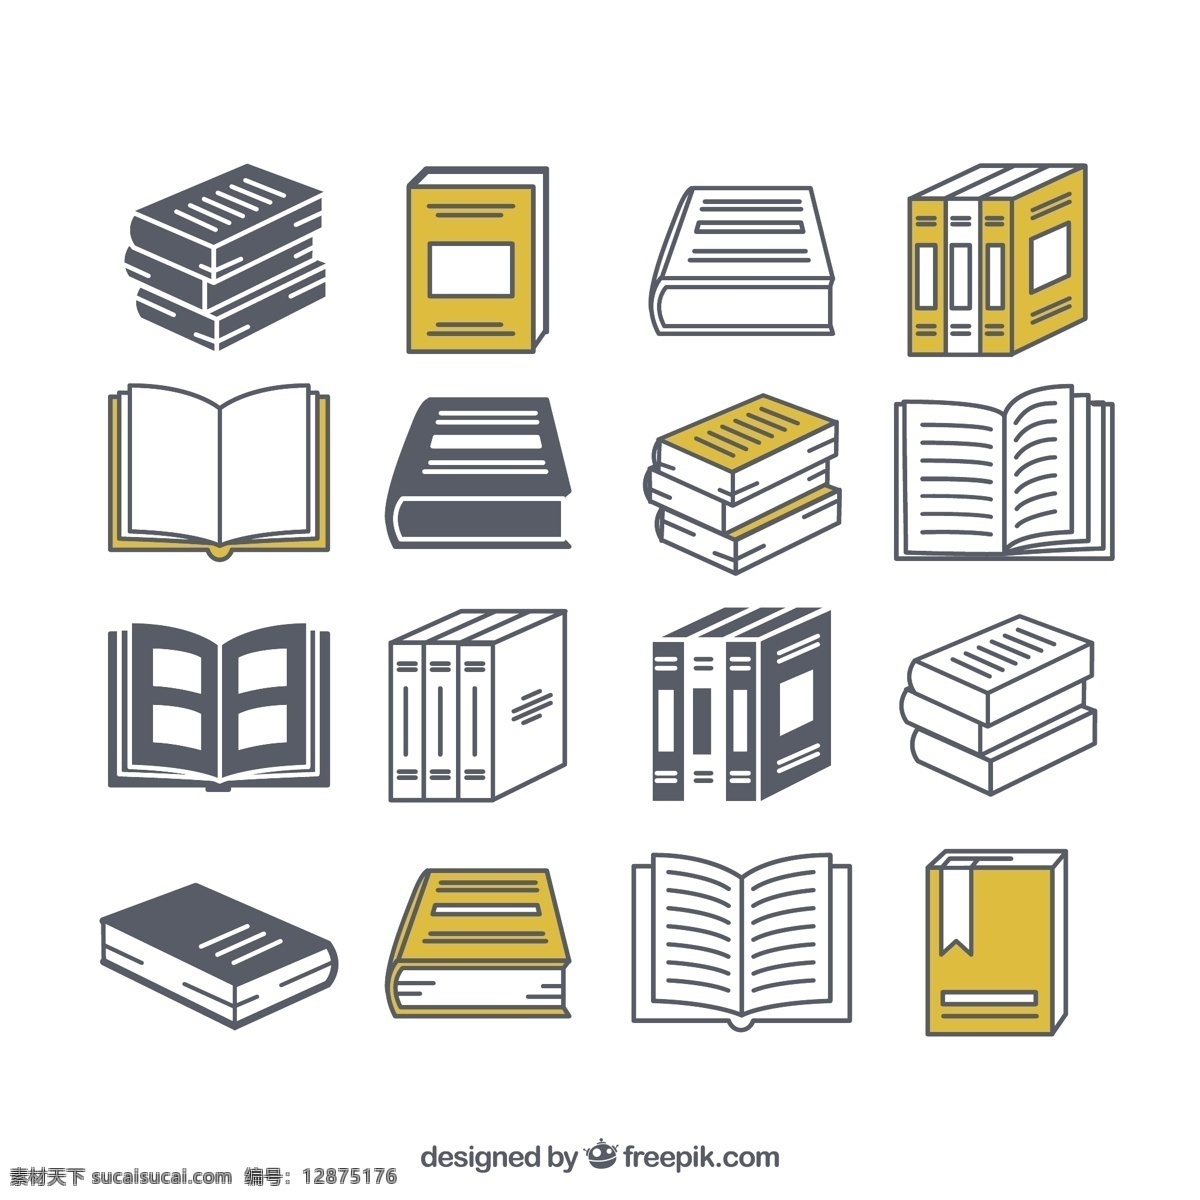 扁平化书本 彩色书本 彩色书籍 图标 书籍图标 阅读软件图标 书籍 书本 教育 小说 资料 平面素材 白色